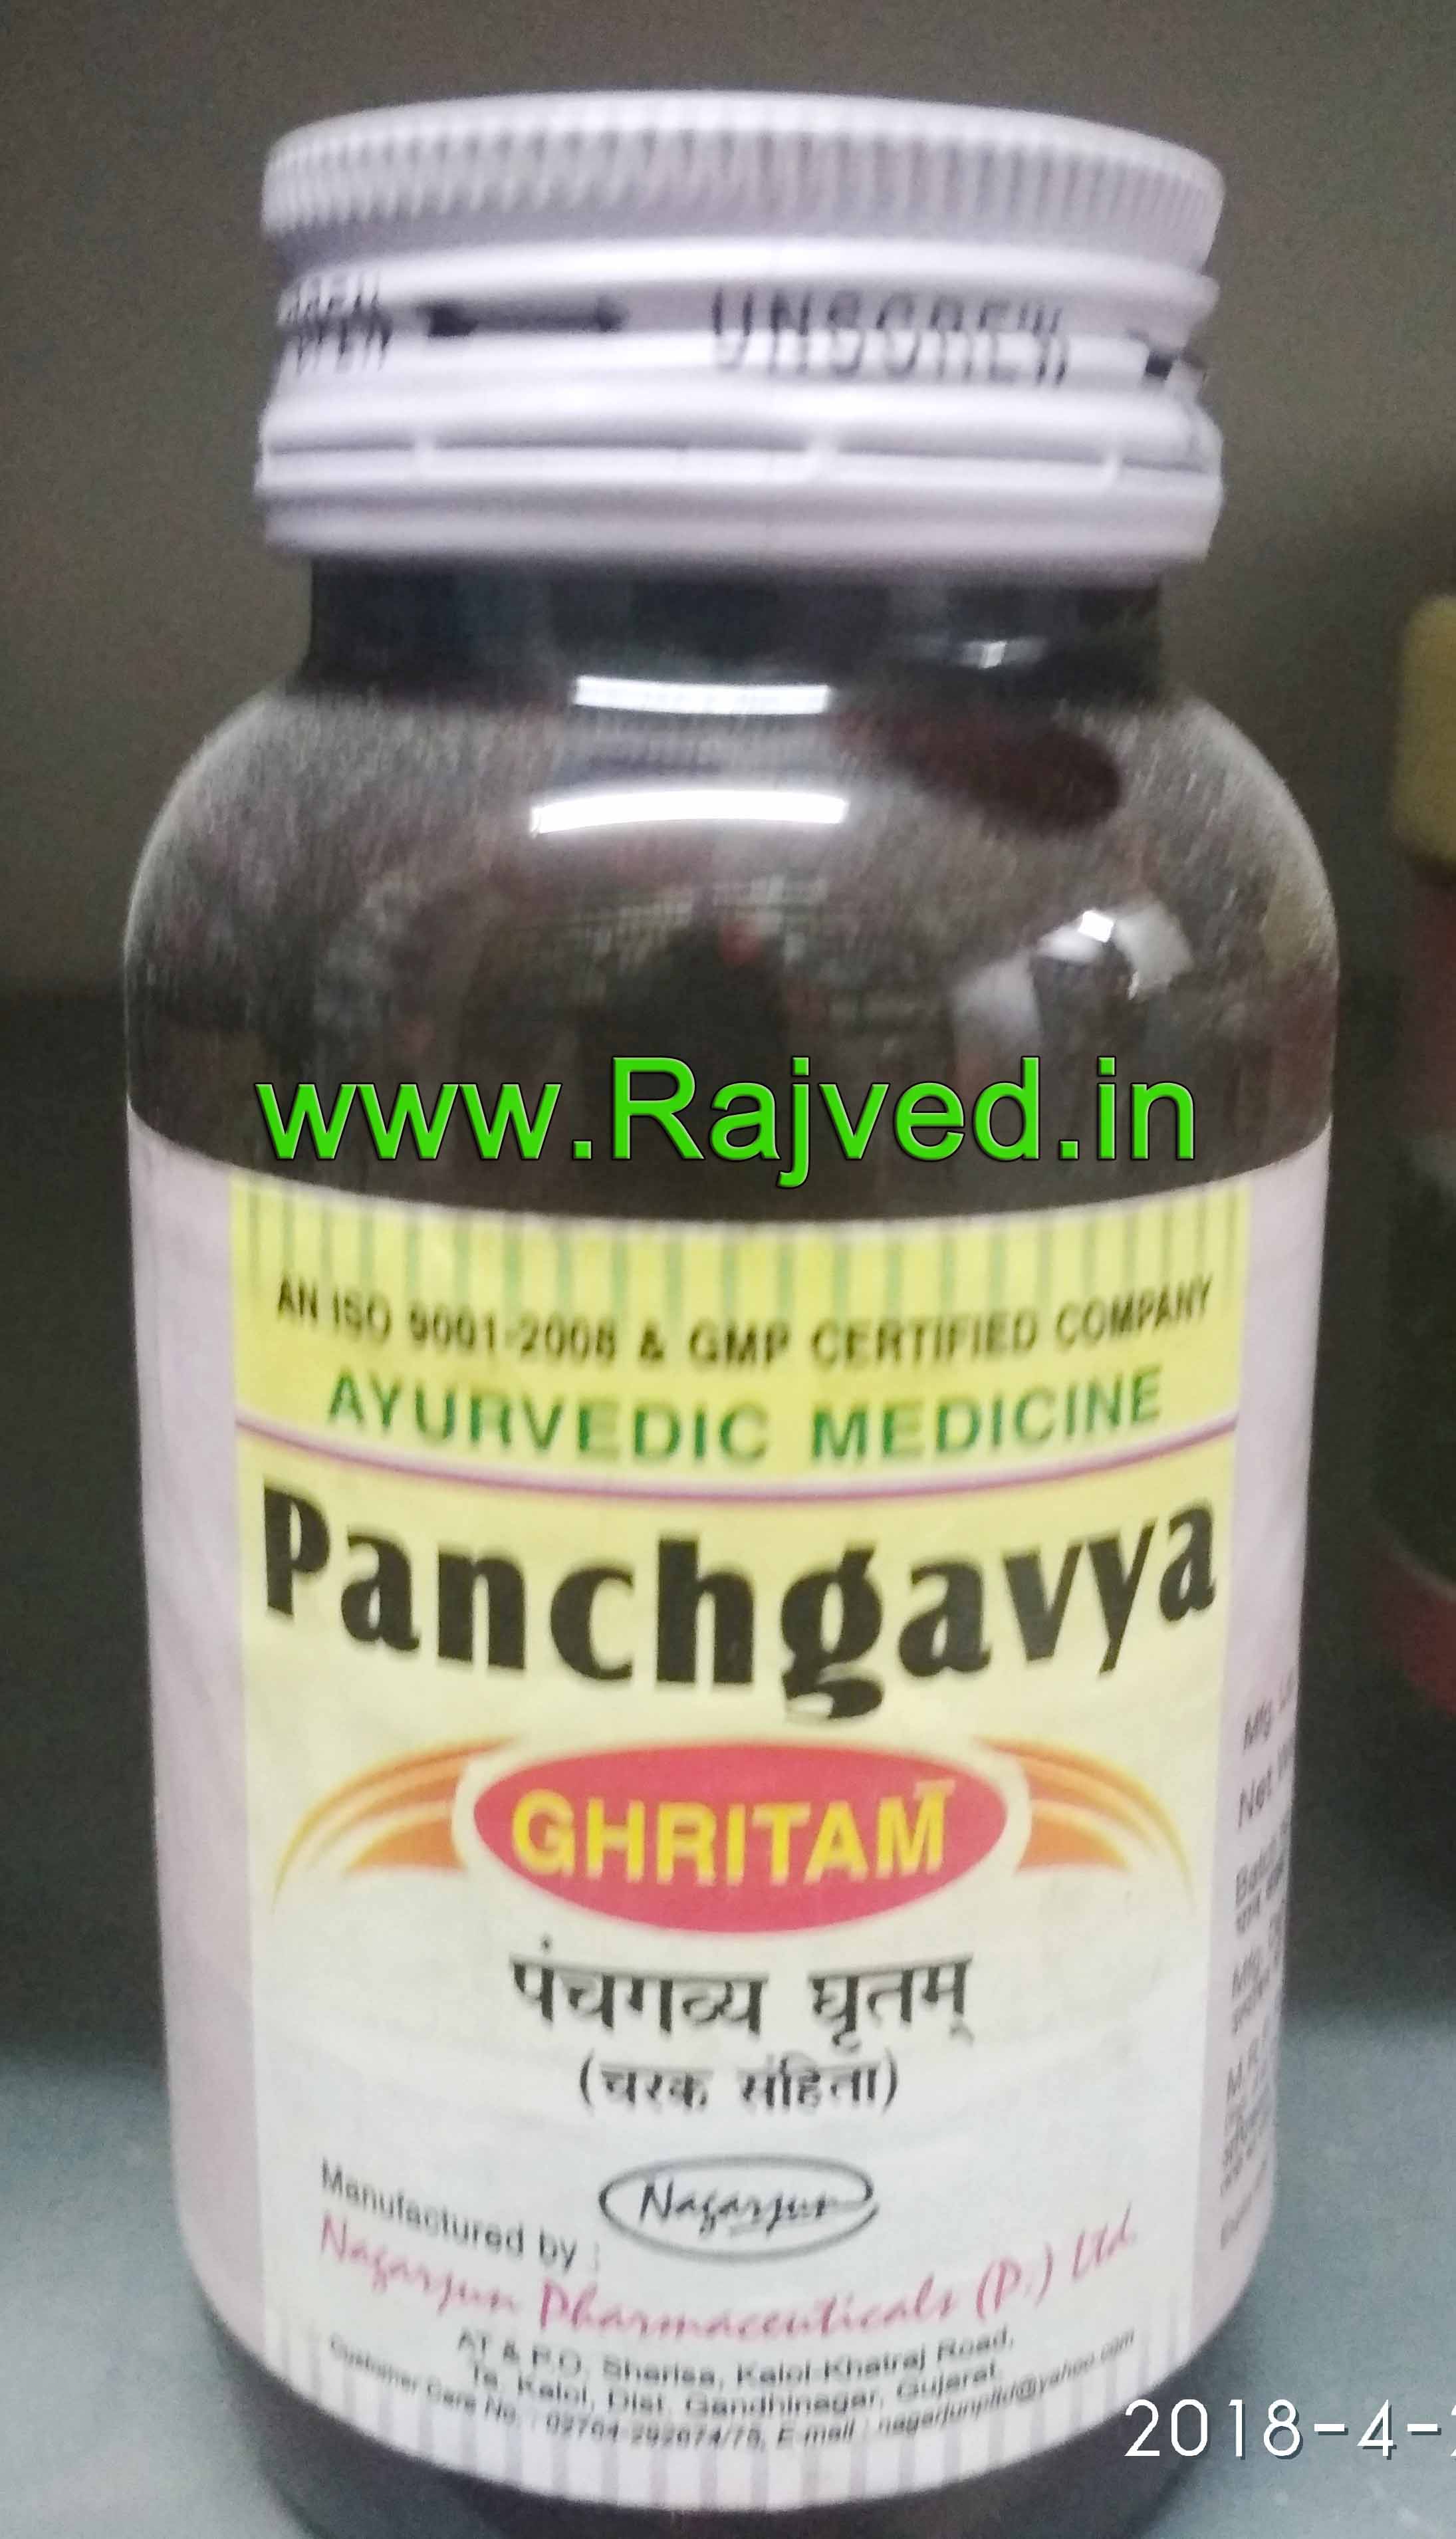 panchgavya ghritam 100 gm upto 20% off nagarjun pharma gujarat